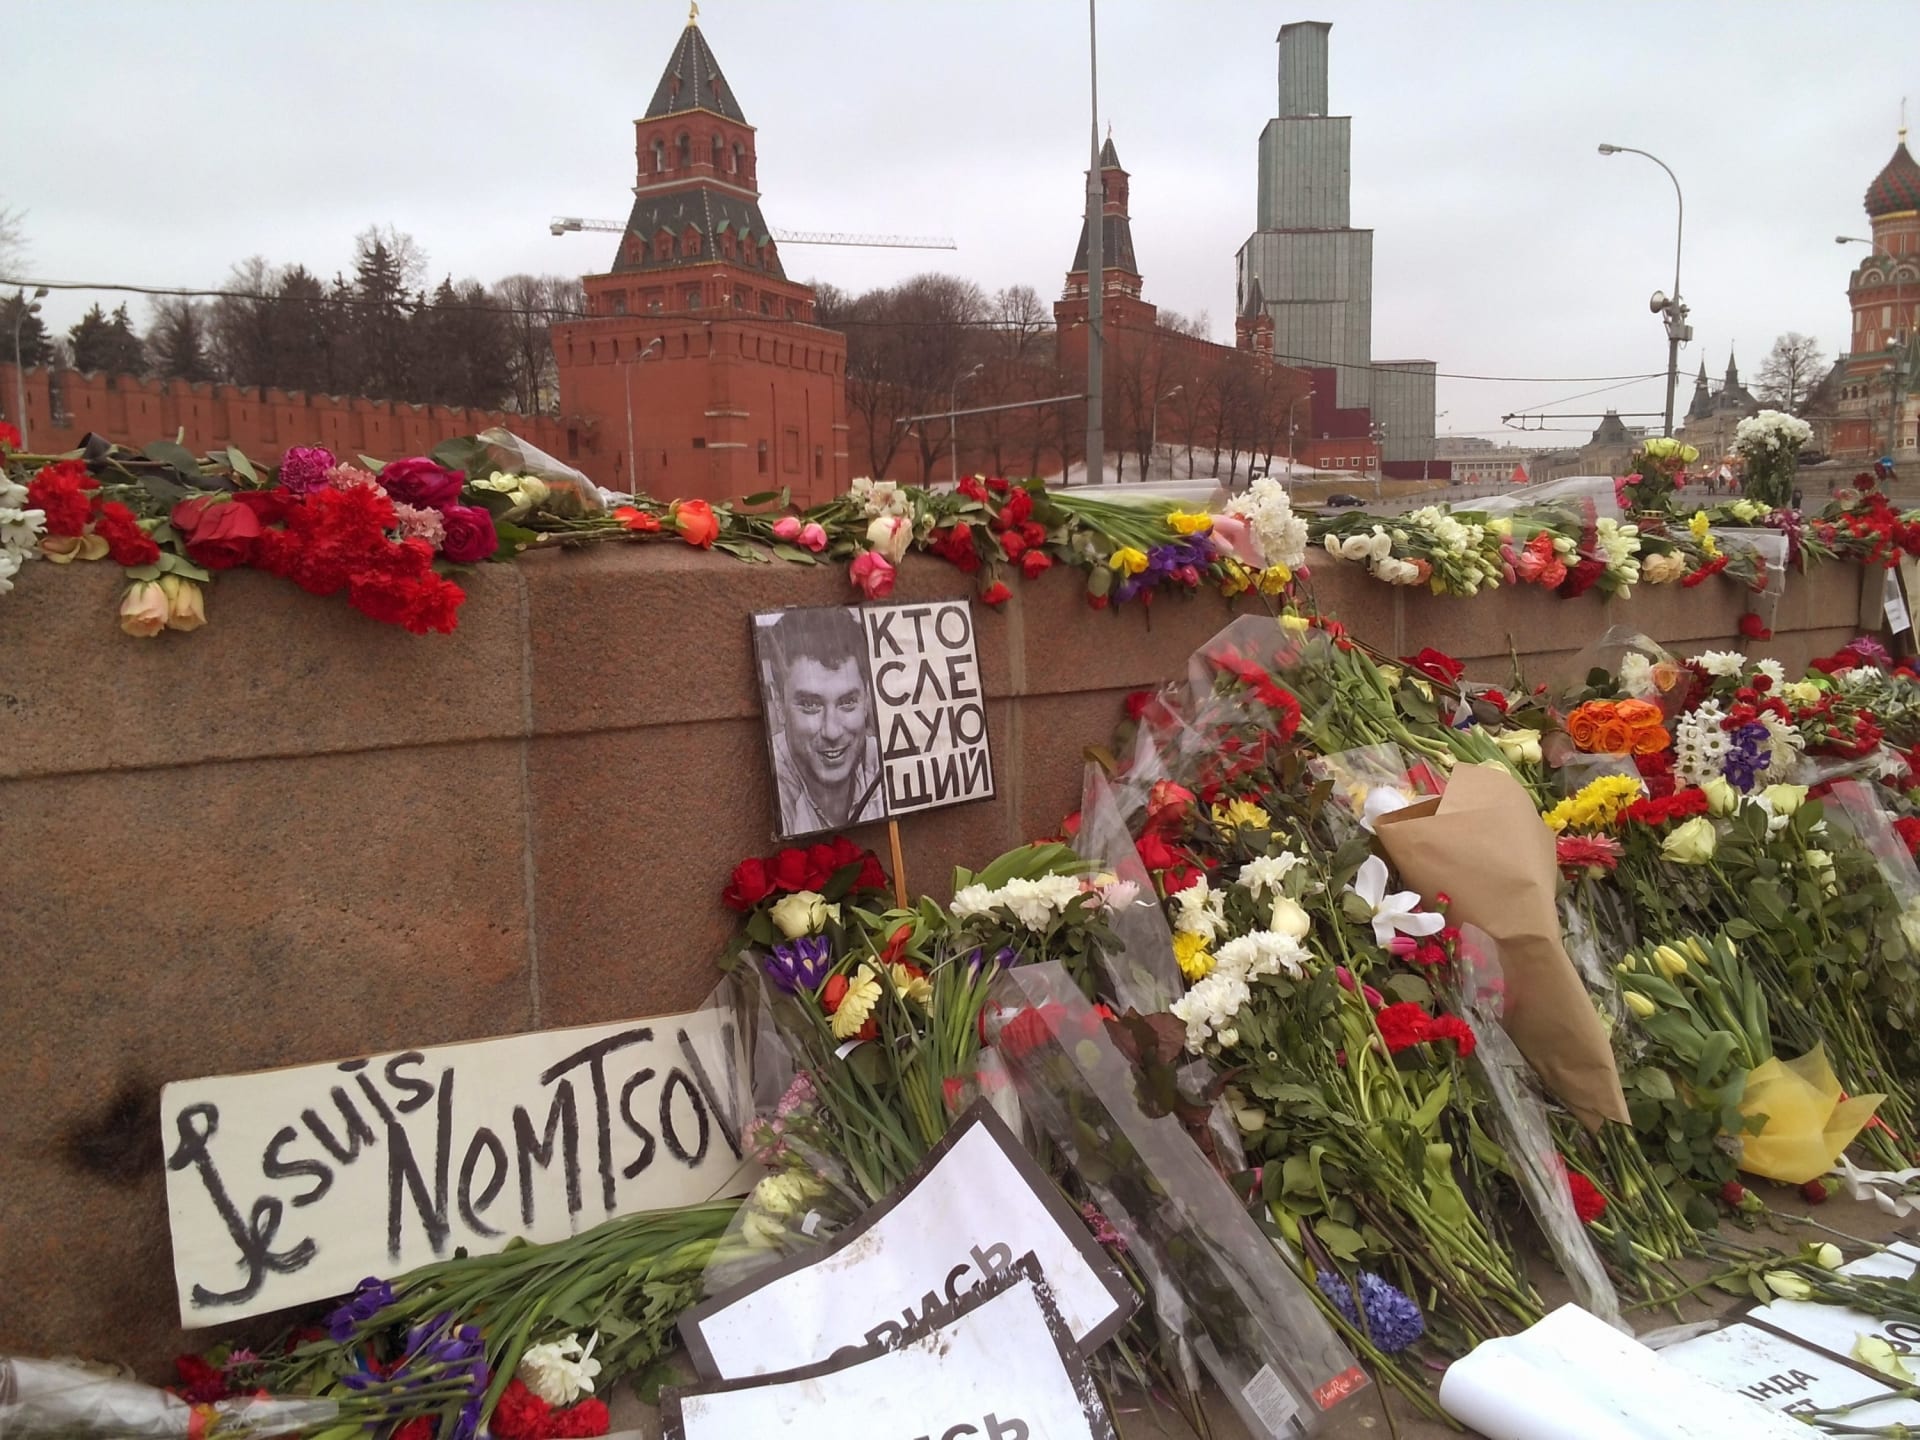 Místo, kde byl před 5 lety zastřelen Boris Němcov